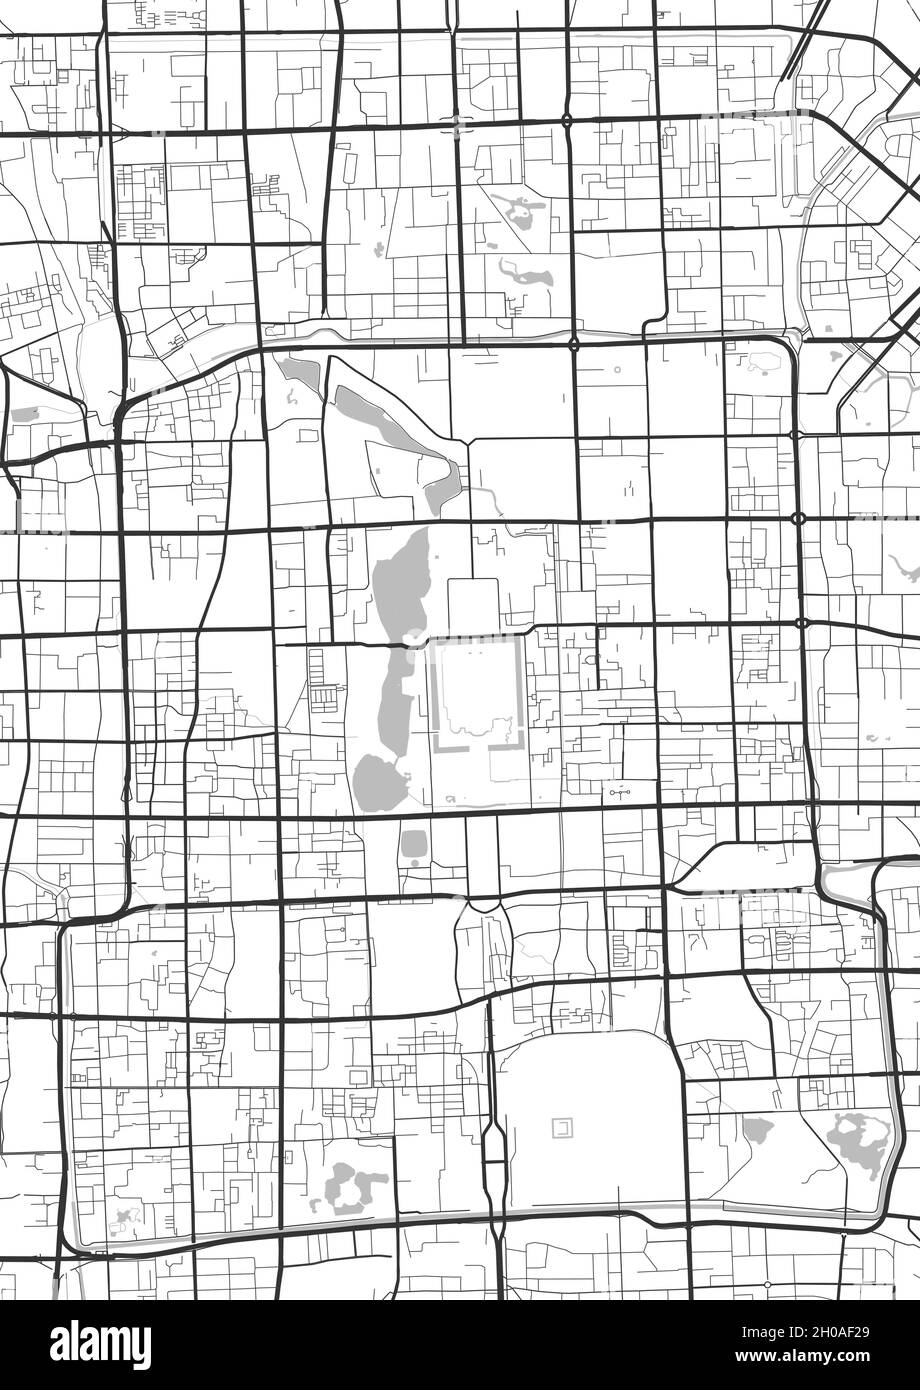 Mapa de Pekín. Mapa detallado de la zona administrativa de la ciudad de Beijing. Panorama de la ciudad. Ilustración vectorial sin derechos de autor. Mapa con carreteras, calle Ilustración del Vector